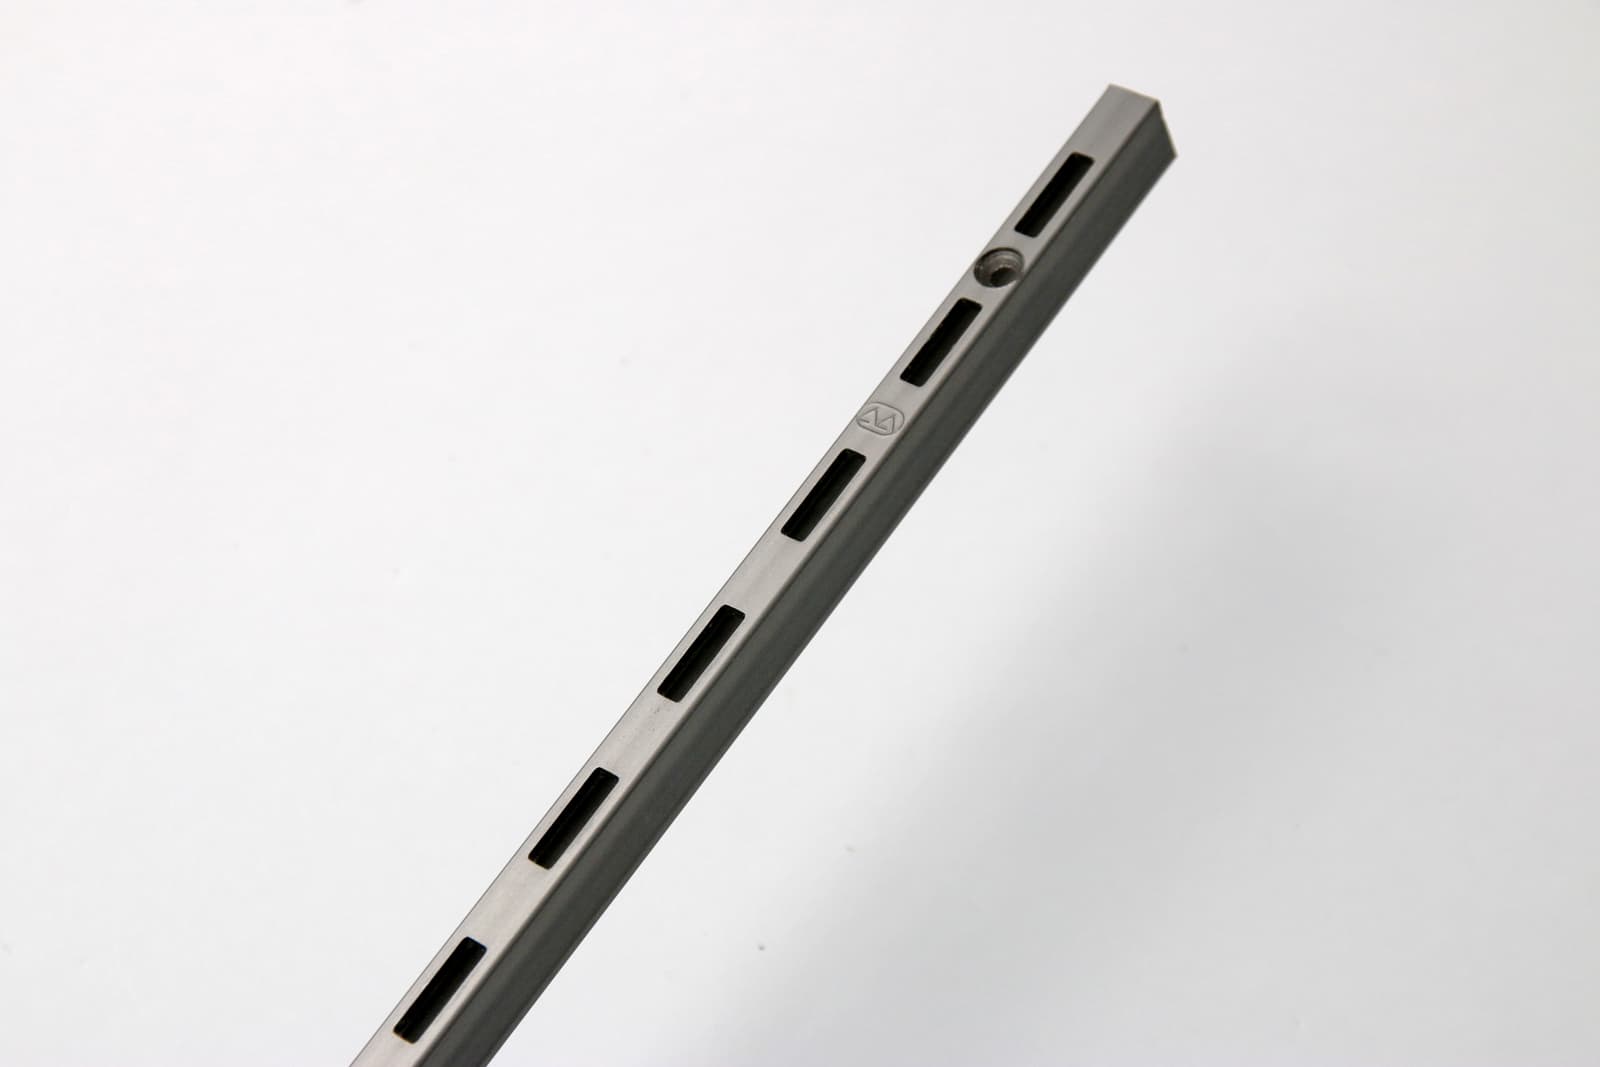 ウォールディスプレイパーツ レール シングル L1200 PS-BK007-04-G207 マットで渋い表情を持つ「サンセン材」と呼ばれる鉄材